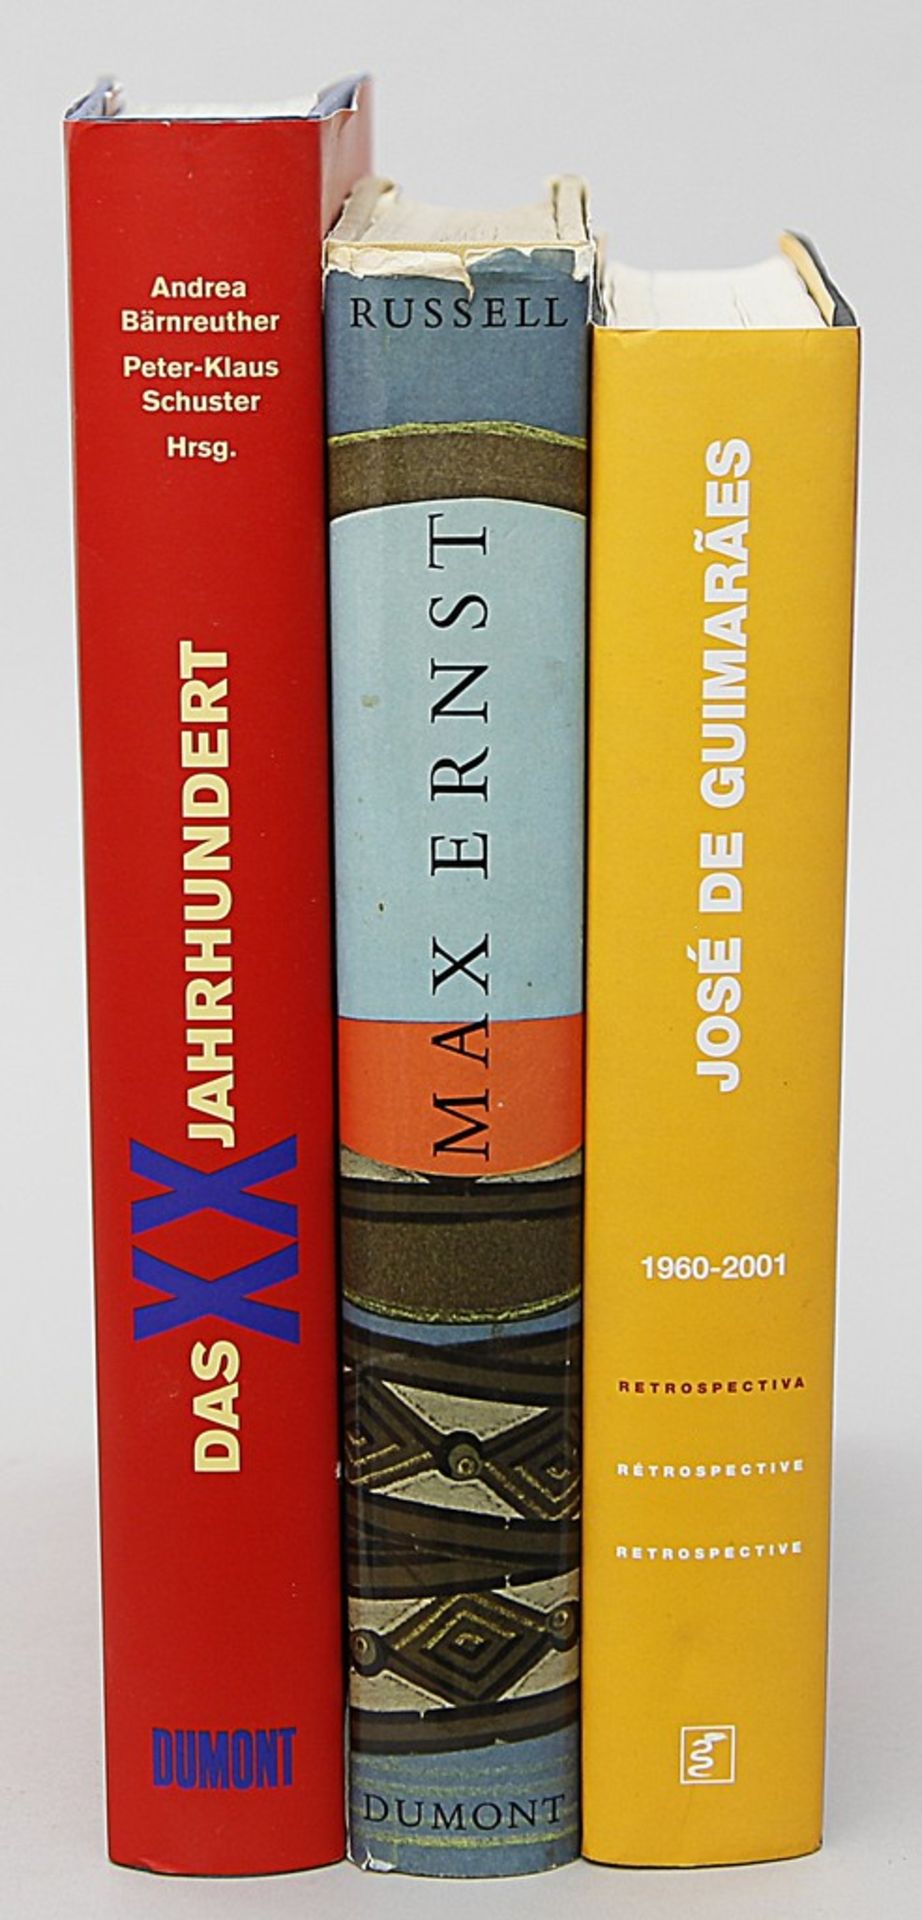 Drei Bücher zur Moderne: a) "José de Guimaraes. Retrospectiva". Auf erster Seite vom